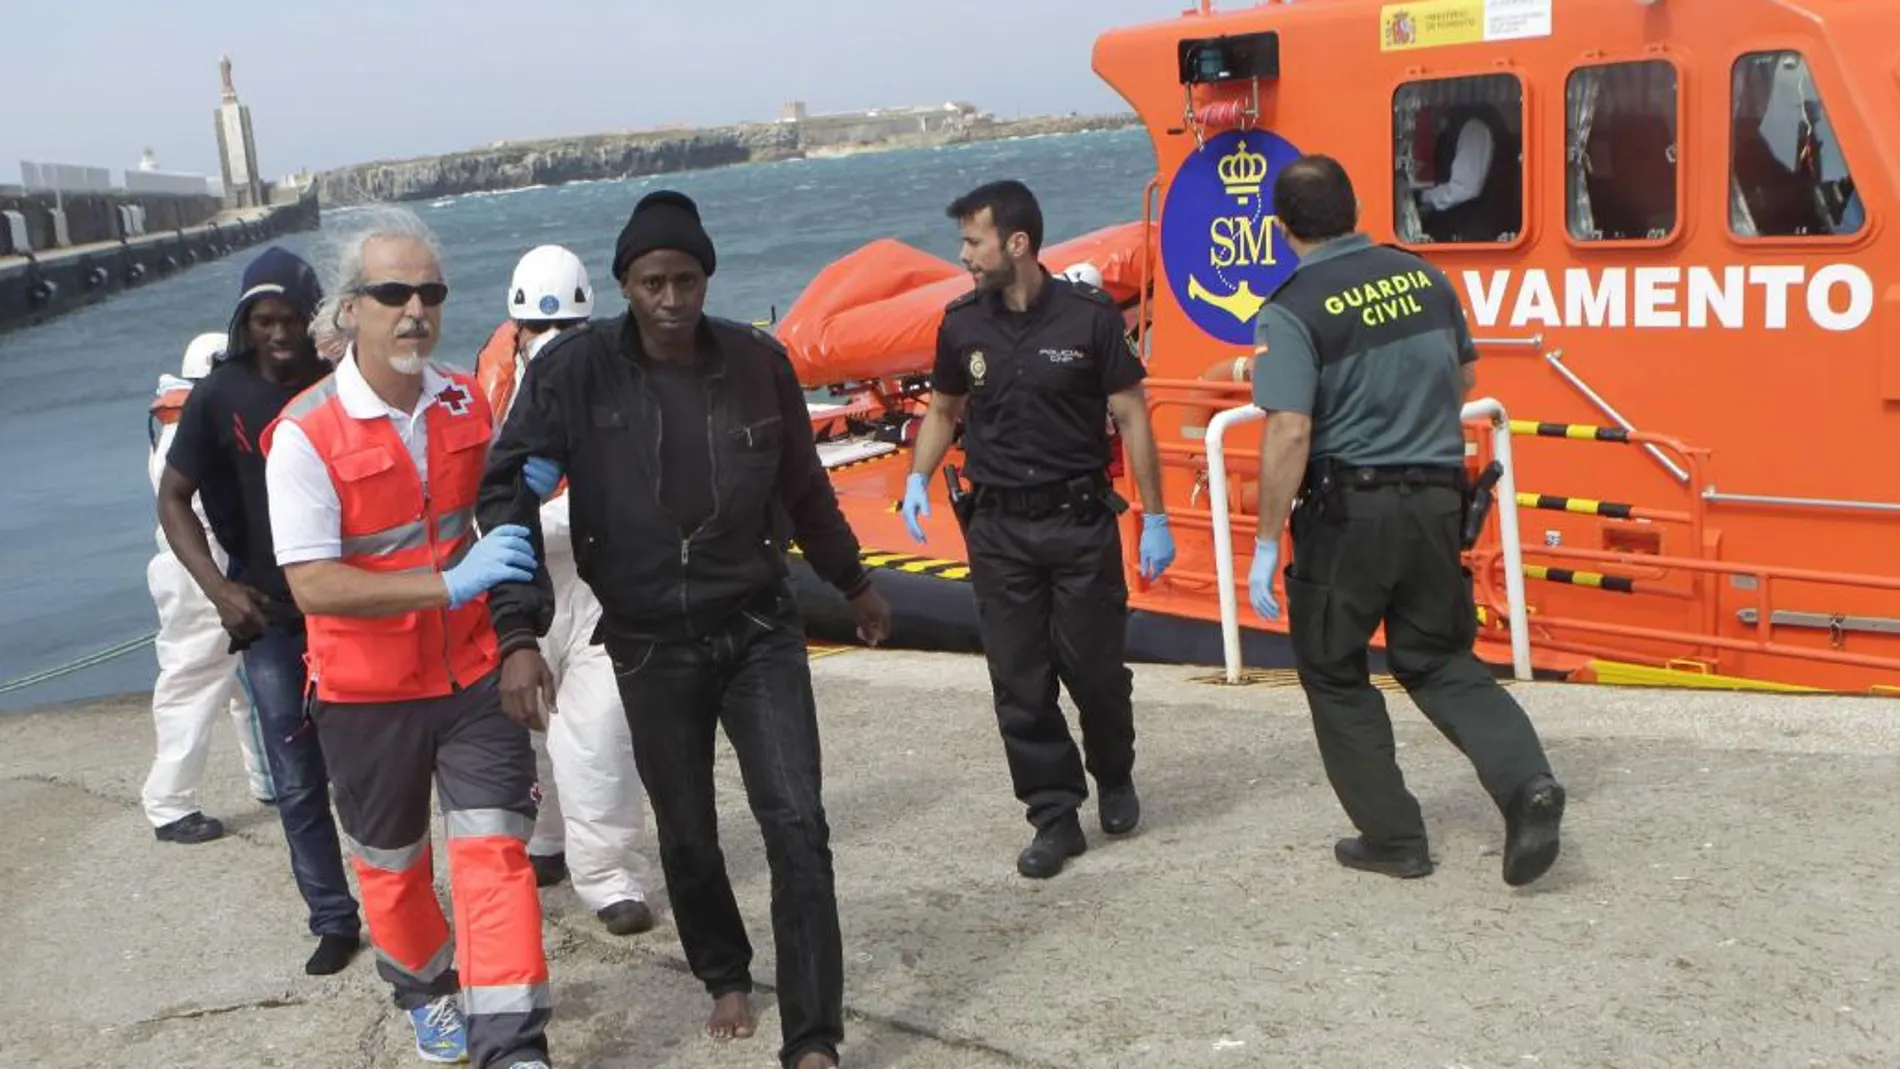 Llegada al puerto de Tarifa de algunos de los 36 inmigrantes subsaharianos que han sido rescatados hoy cuando intentaban alcanzar las costas españolas